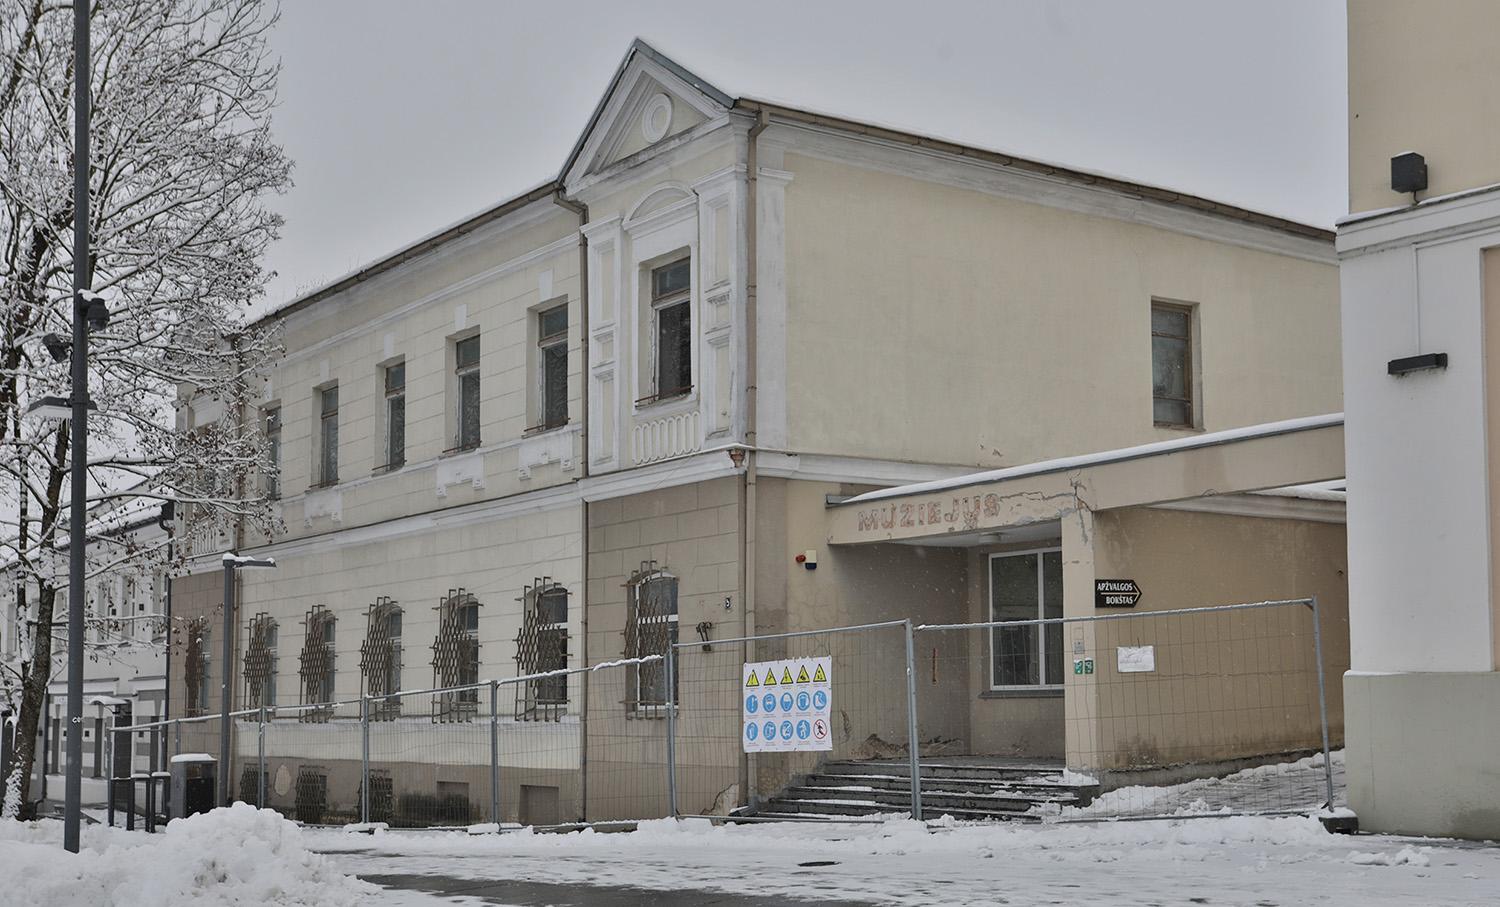 Buvusiame kraštotyros muziejuje įsikurs savivaldybės darbuotojai / Dainiaus Vyto nuotr. Atnaujinamas pastatas Kęstučio a. 5